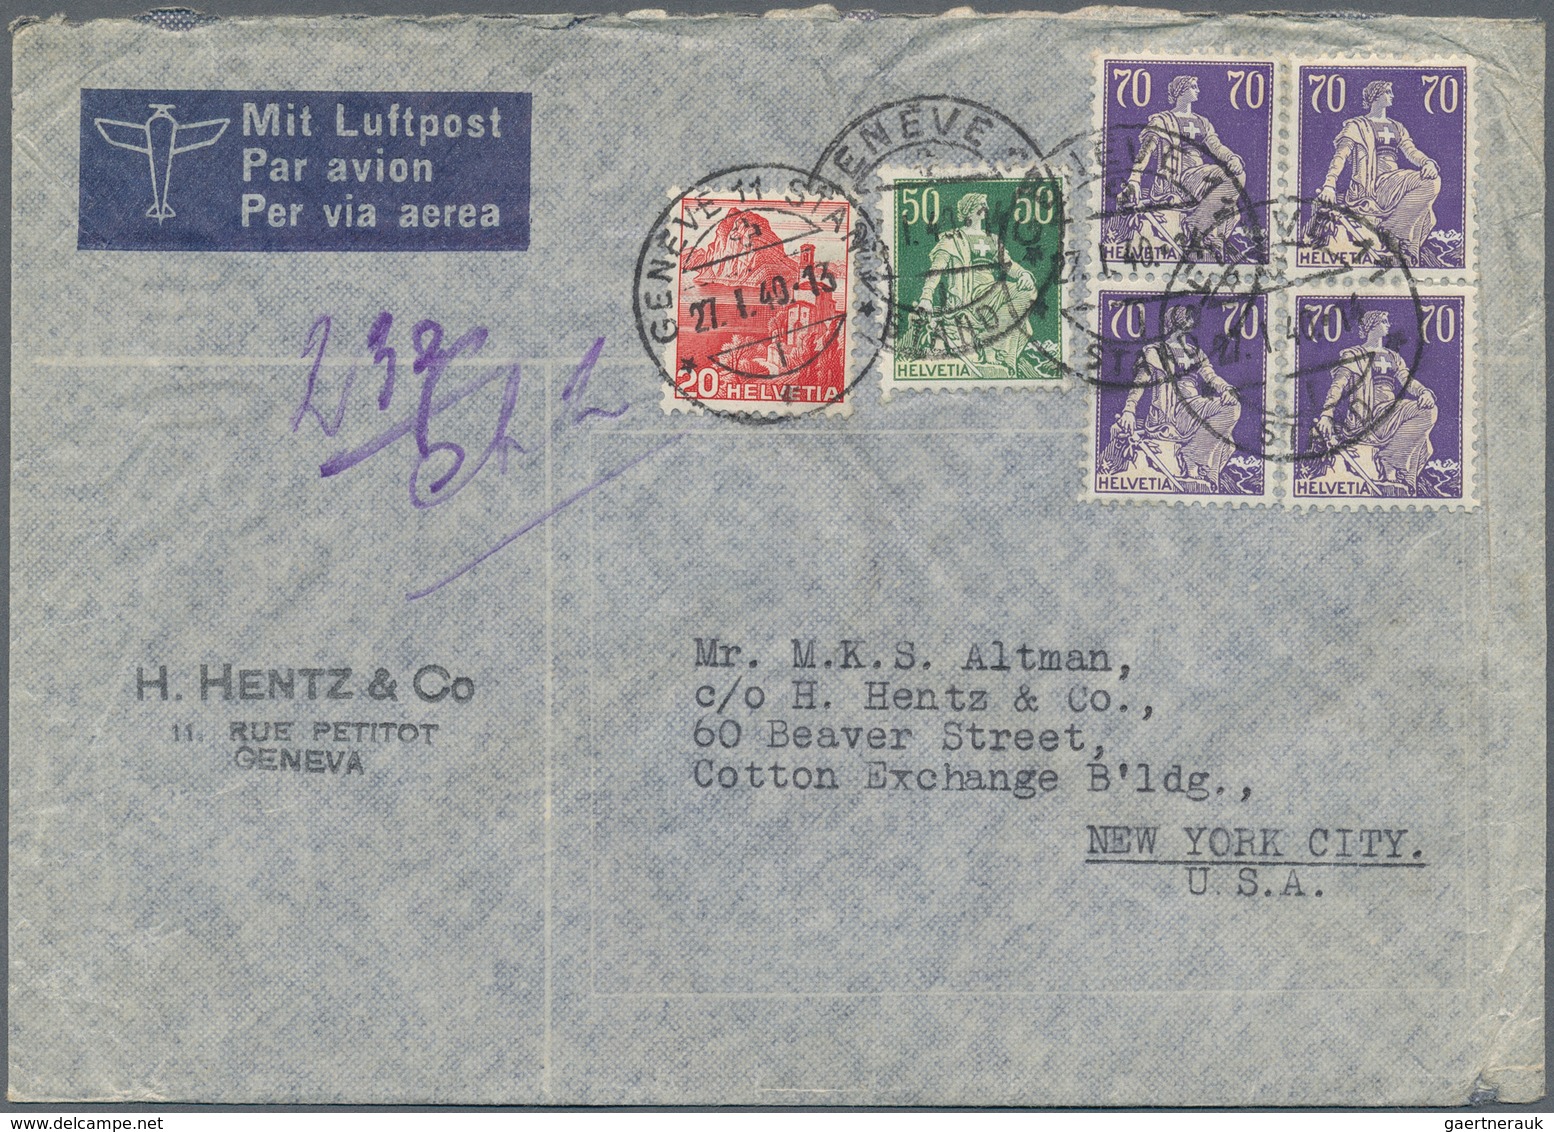 Schweiz: 1940/60(ca.), Sehr schöner Posten von ca. 200 LuPo-Briefen aus einer Schweiz-USA Korrespond